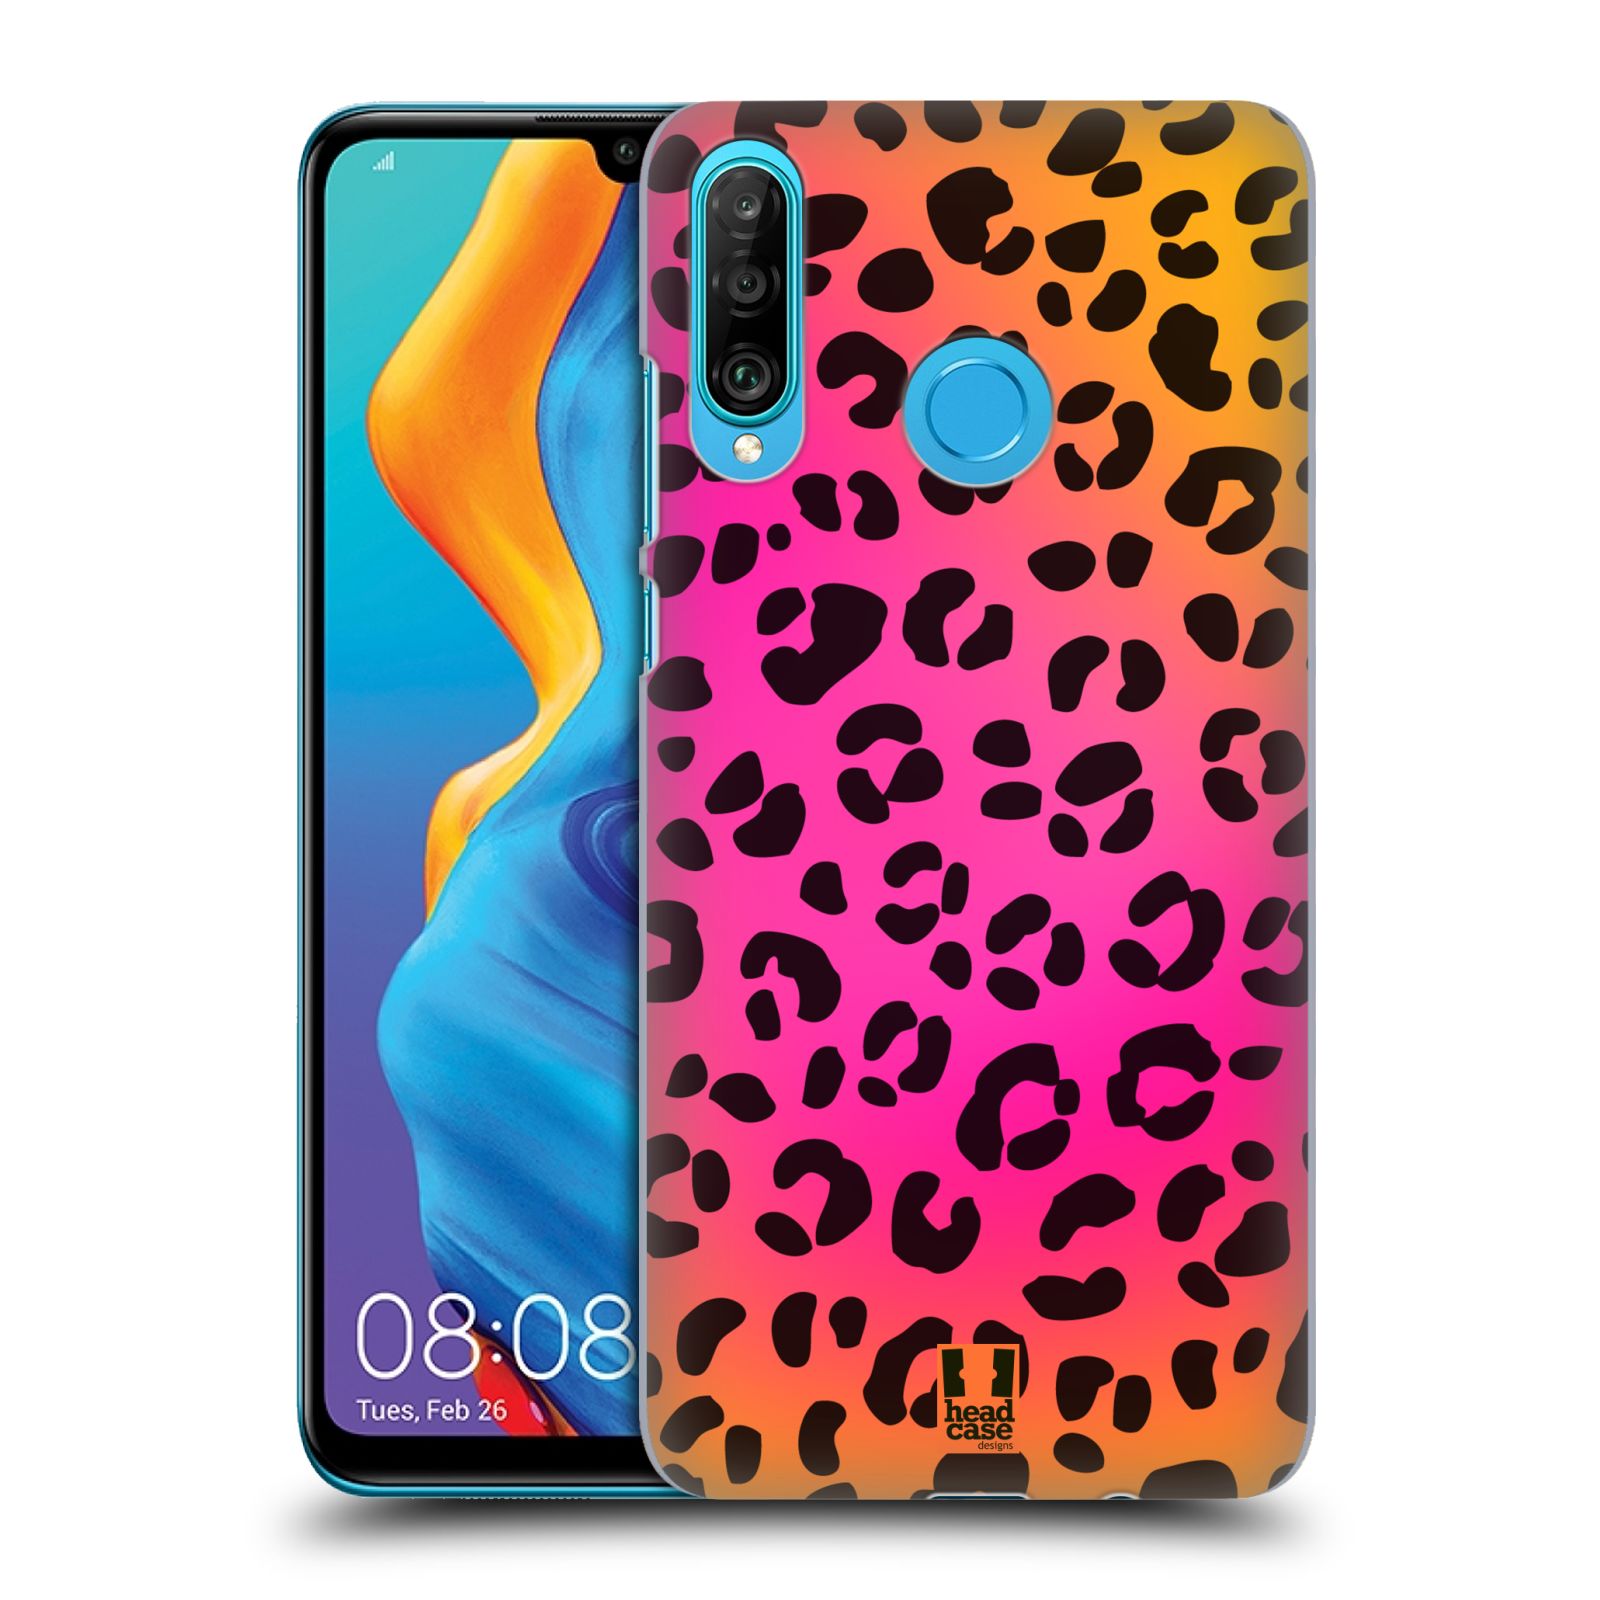 Pouzdro na mobil Huawei P30 LITE - HEAD CASE - vzor Divočina zvíře růžový leopard